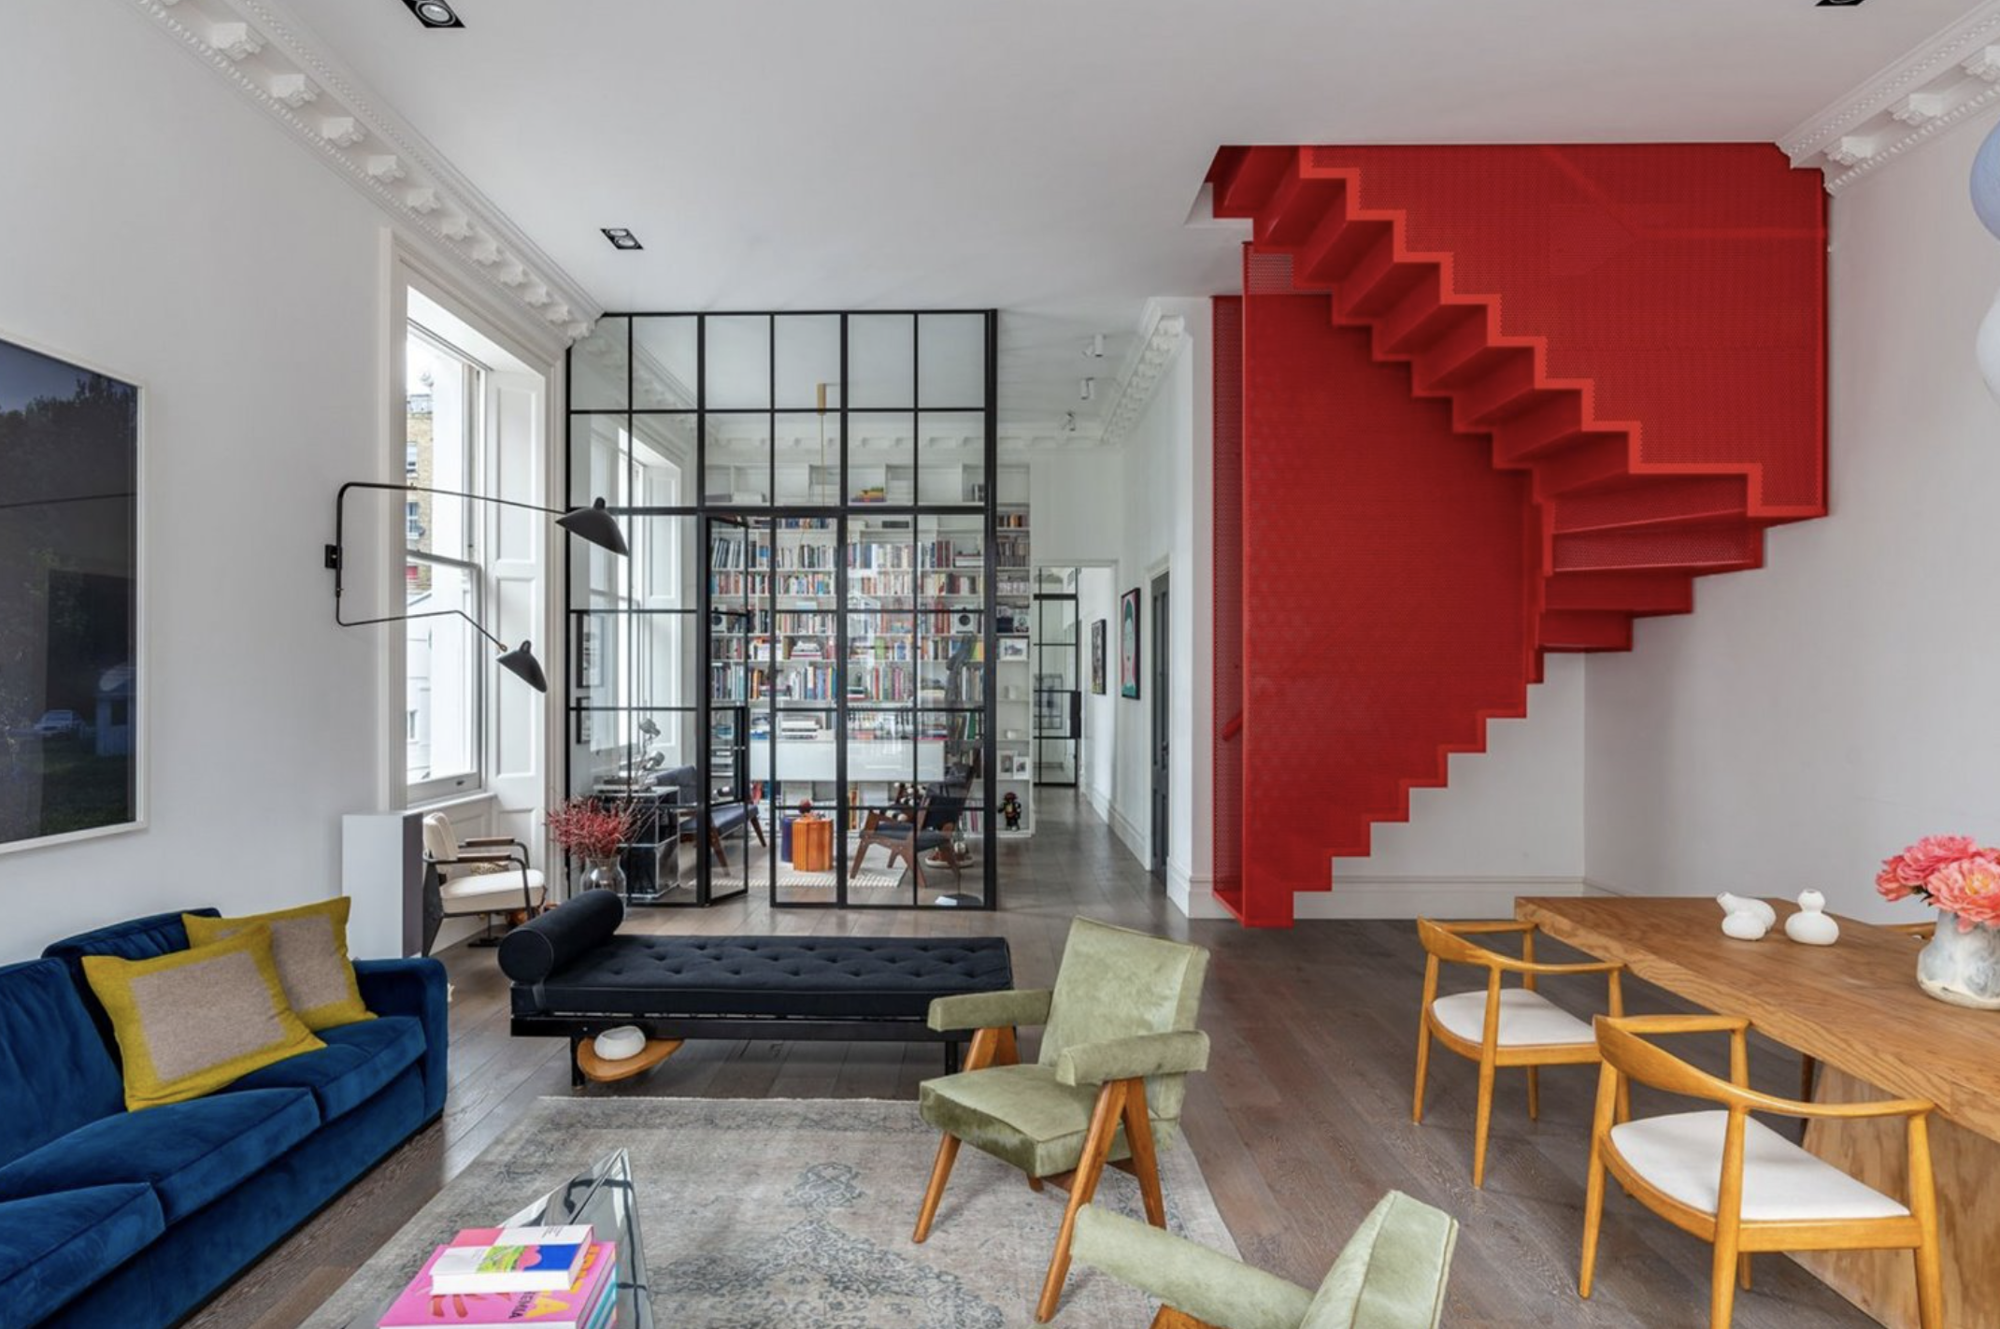 salon con sofa azul, butacas verdes, una escalera roja y blanca y una puerta corredera de cristal con carpinteria negra